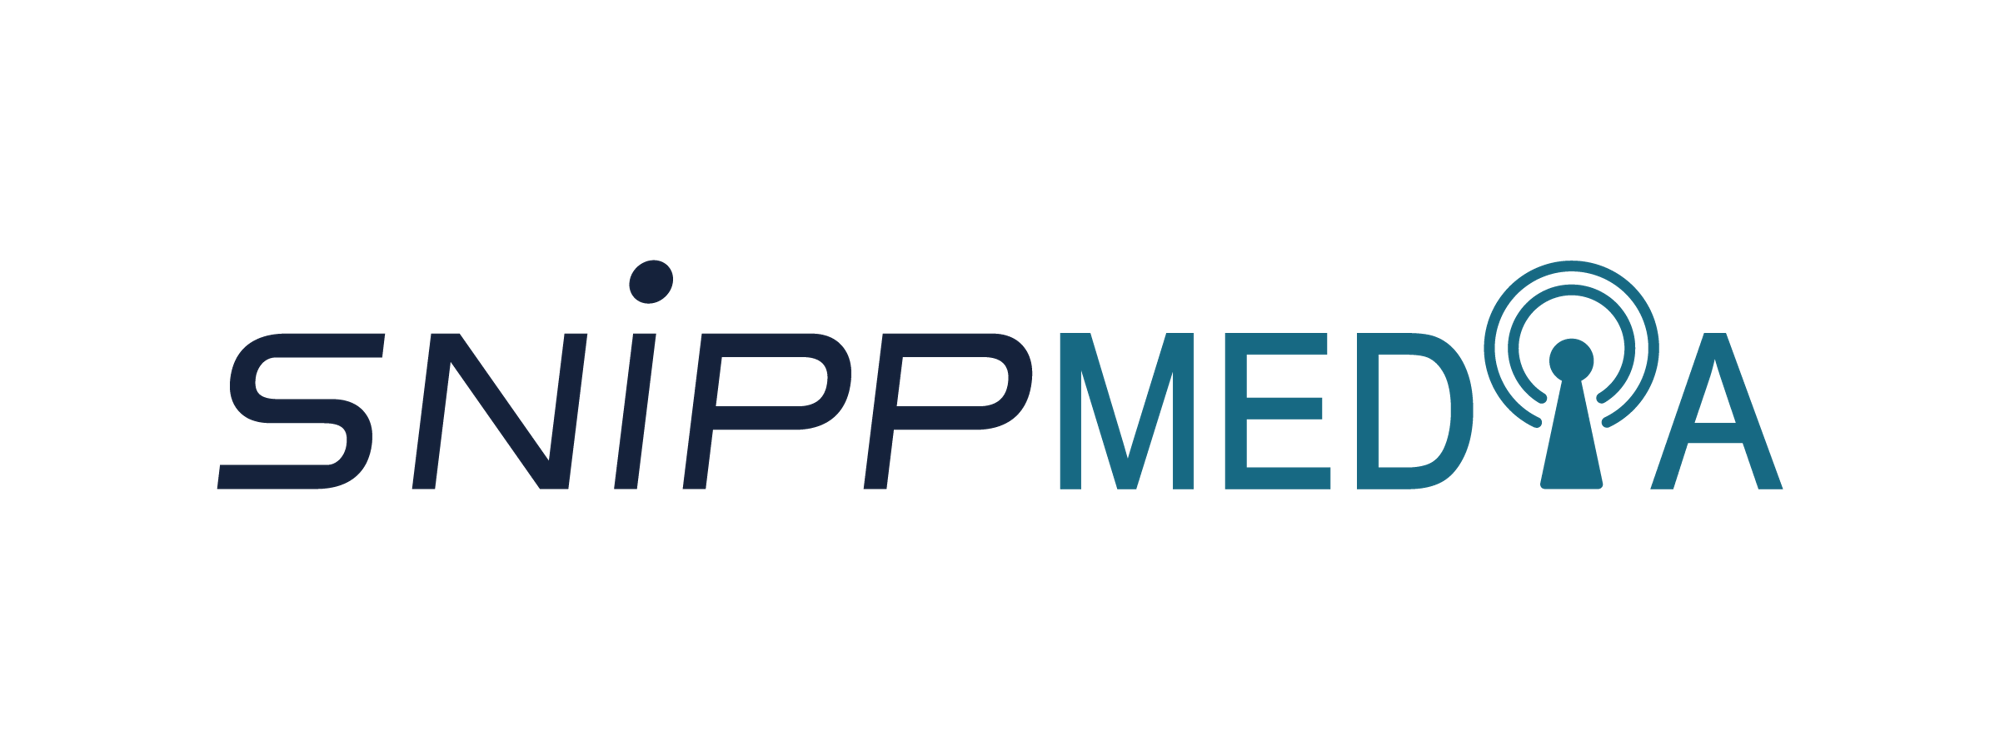 SnippMedia logo-12